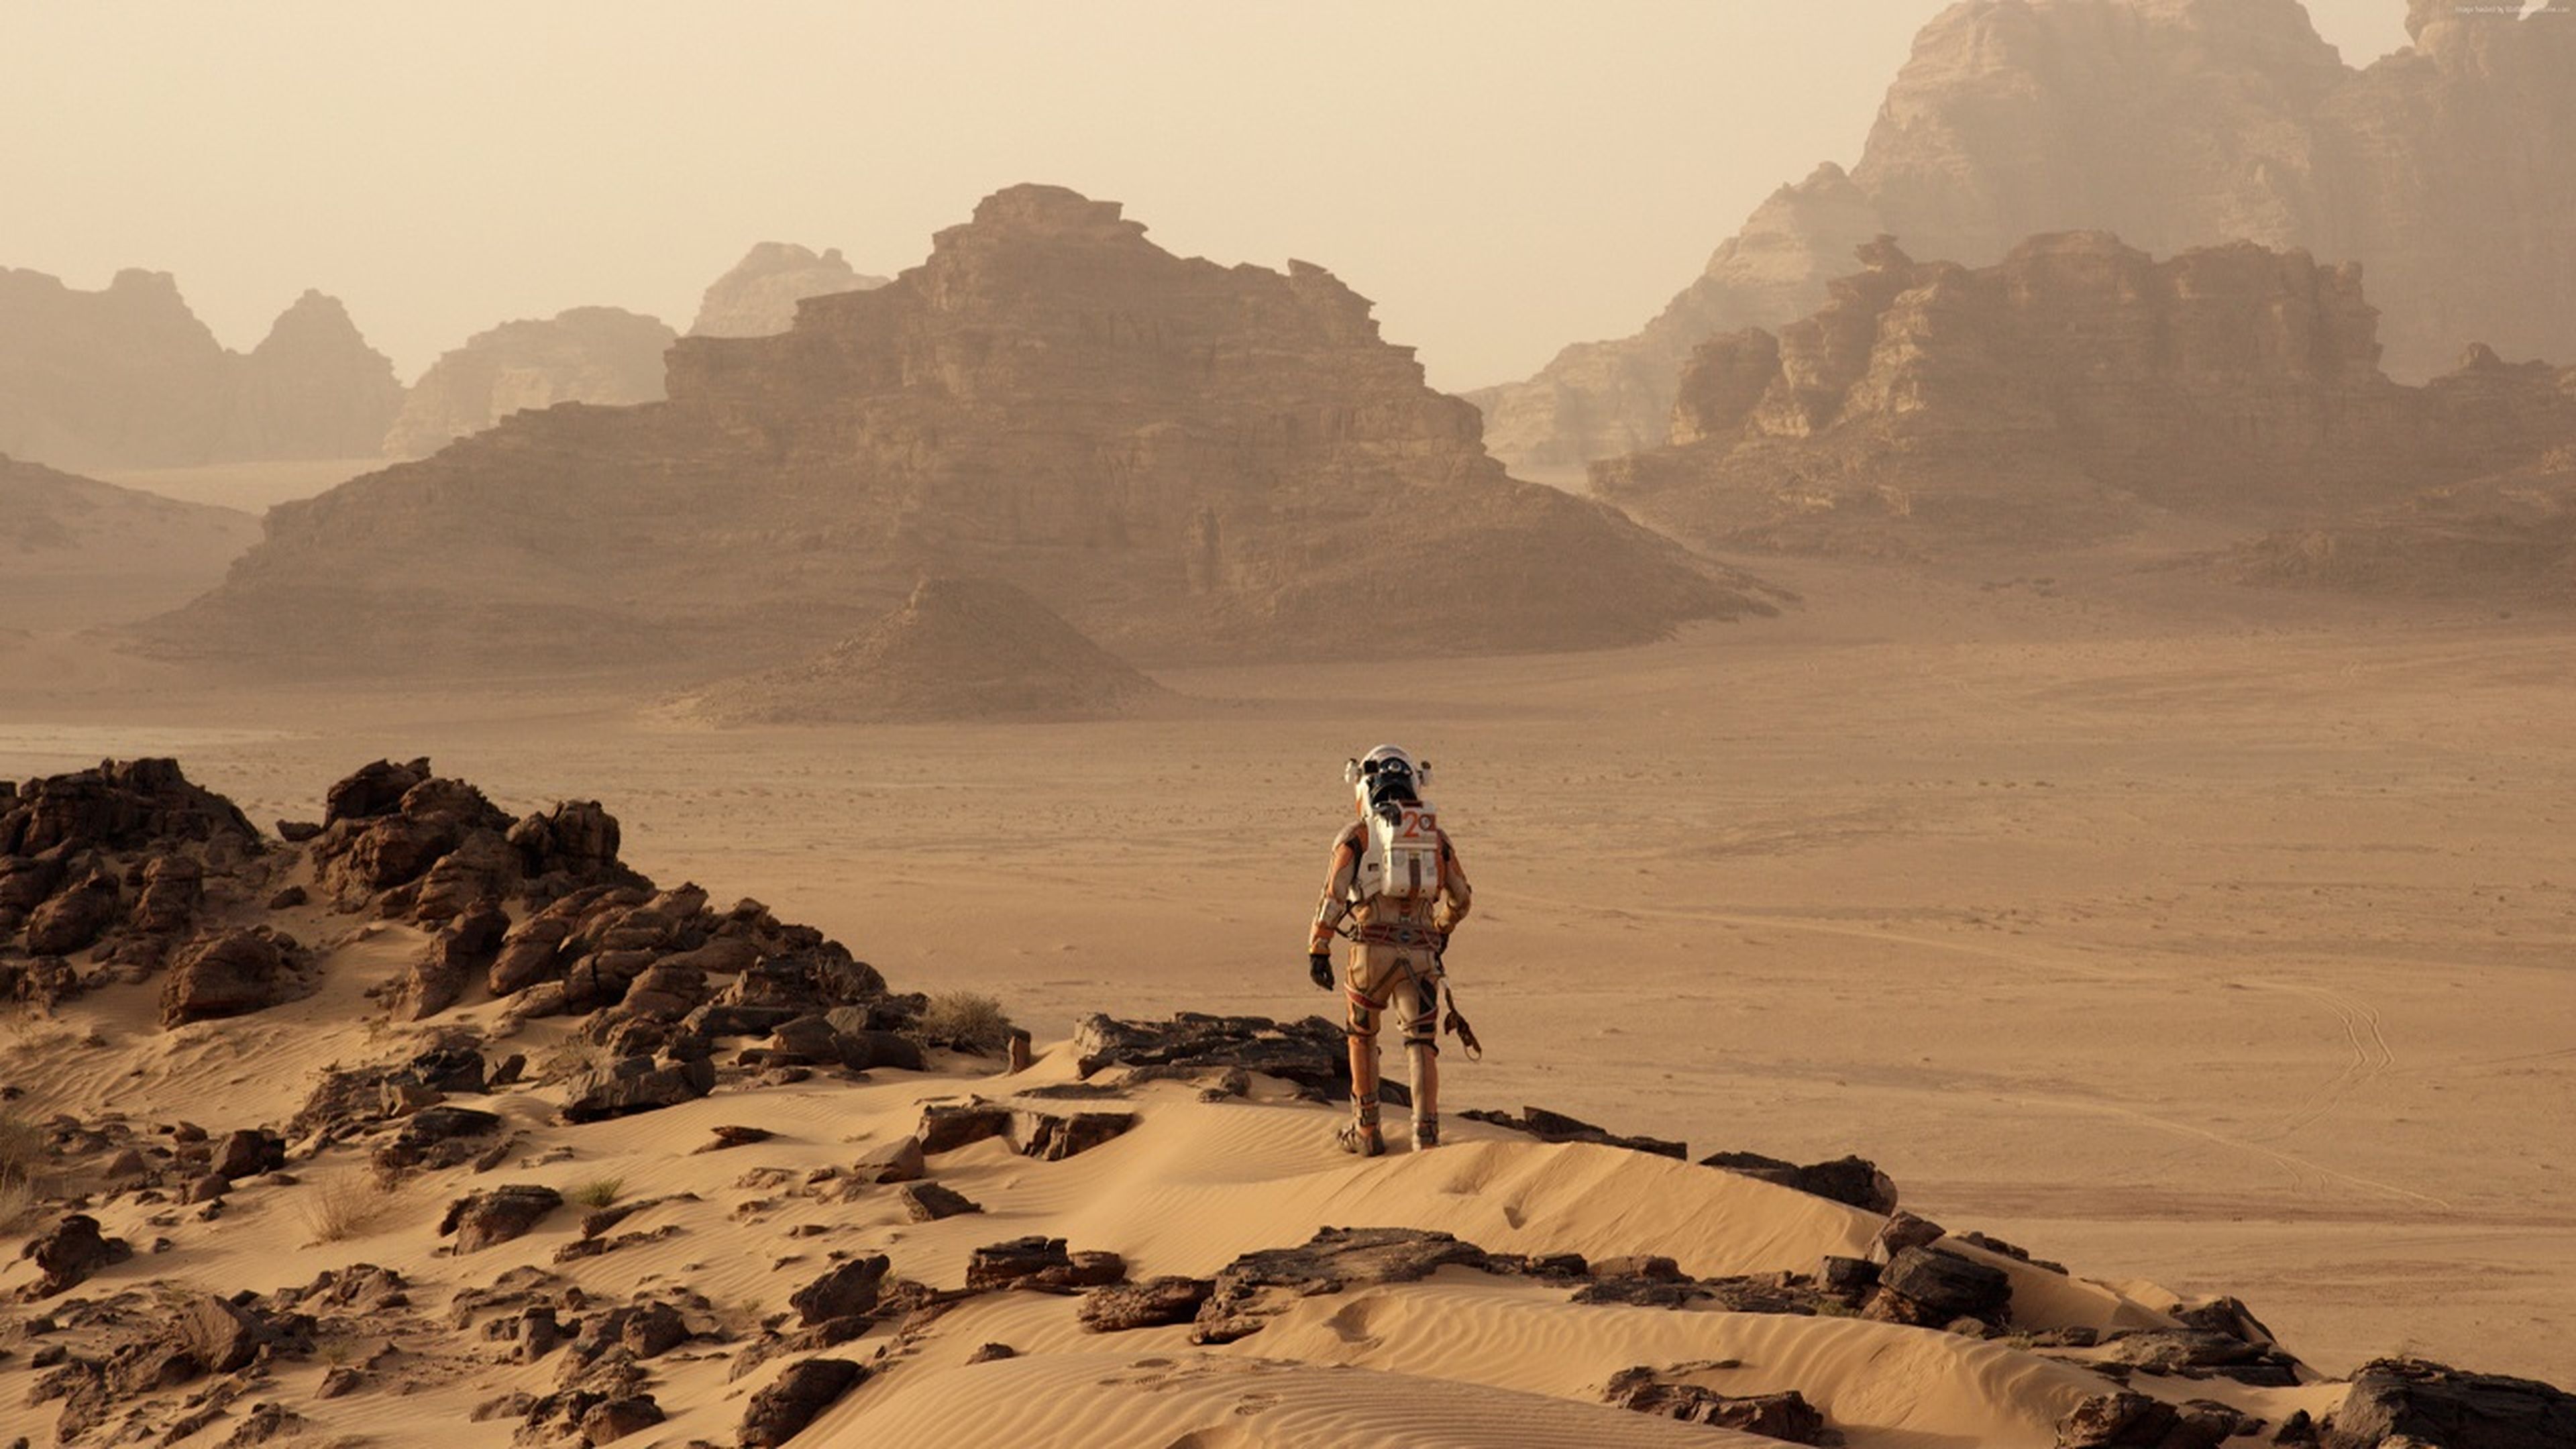 Cine marciano: estas son las 5 mejores películas ambientadas en Marte de todos los tiempos